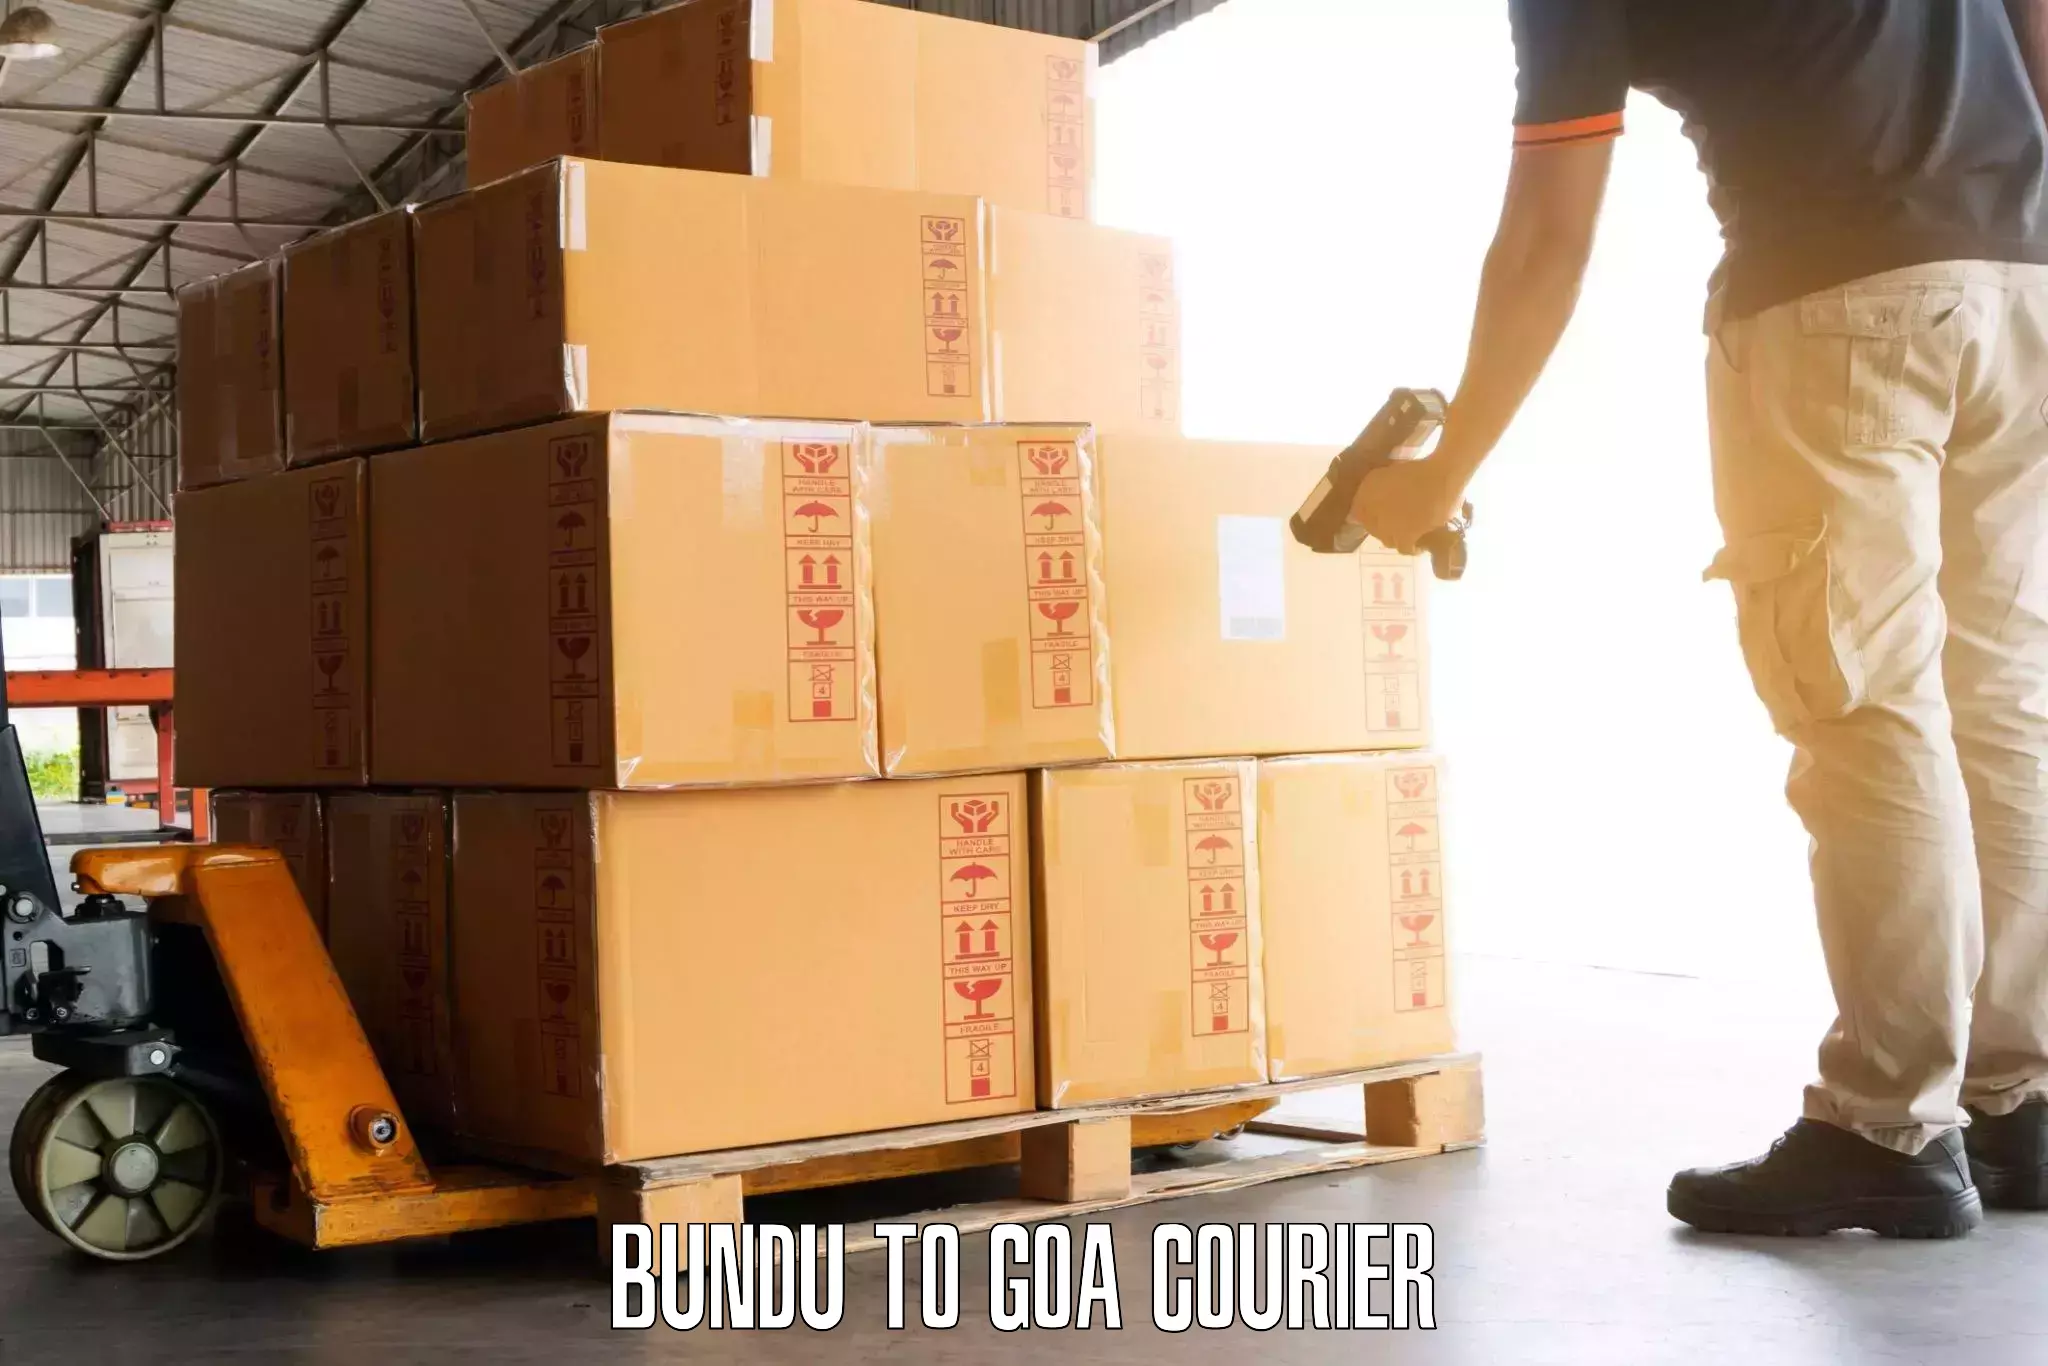 Luggage shipment specialists Bundu to Ponda